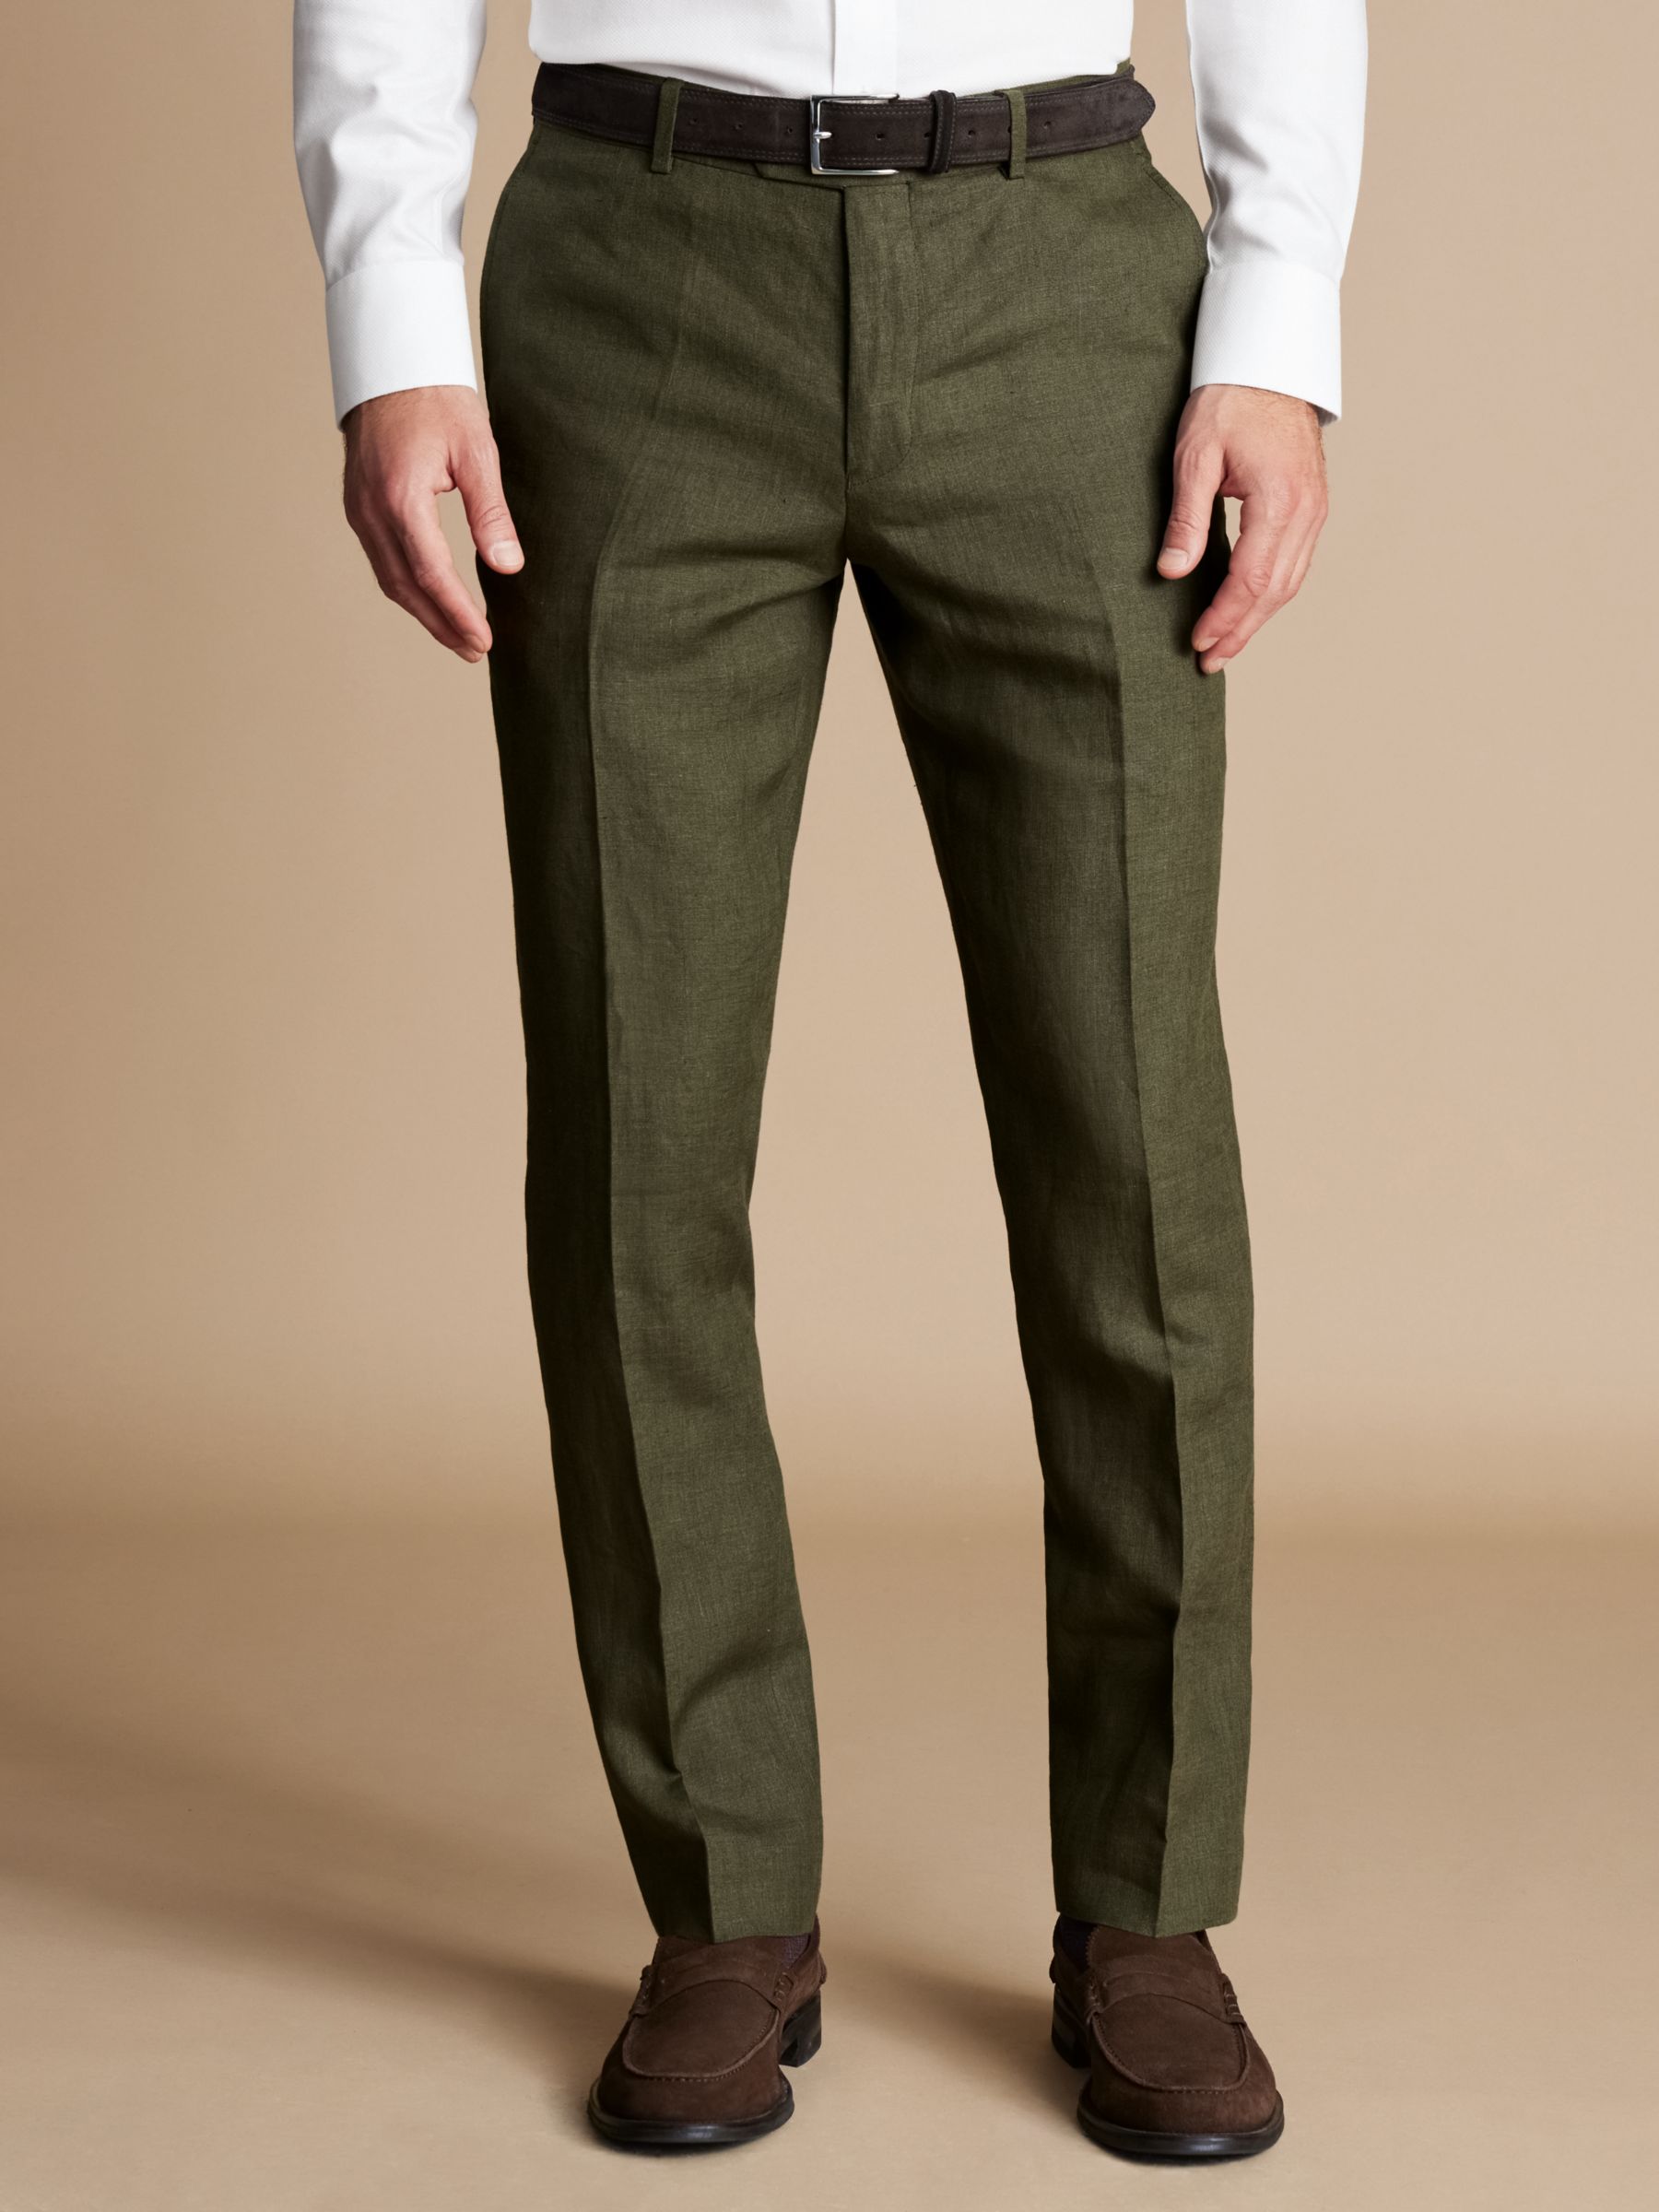 Charles Tyrwhitt Slim Fit Linen Trousers, Olive Green, 30R